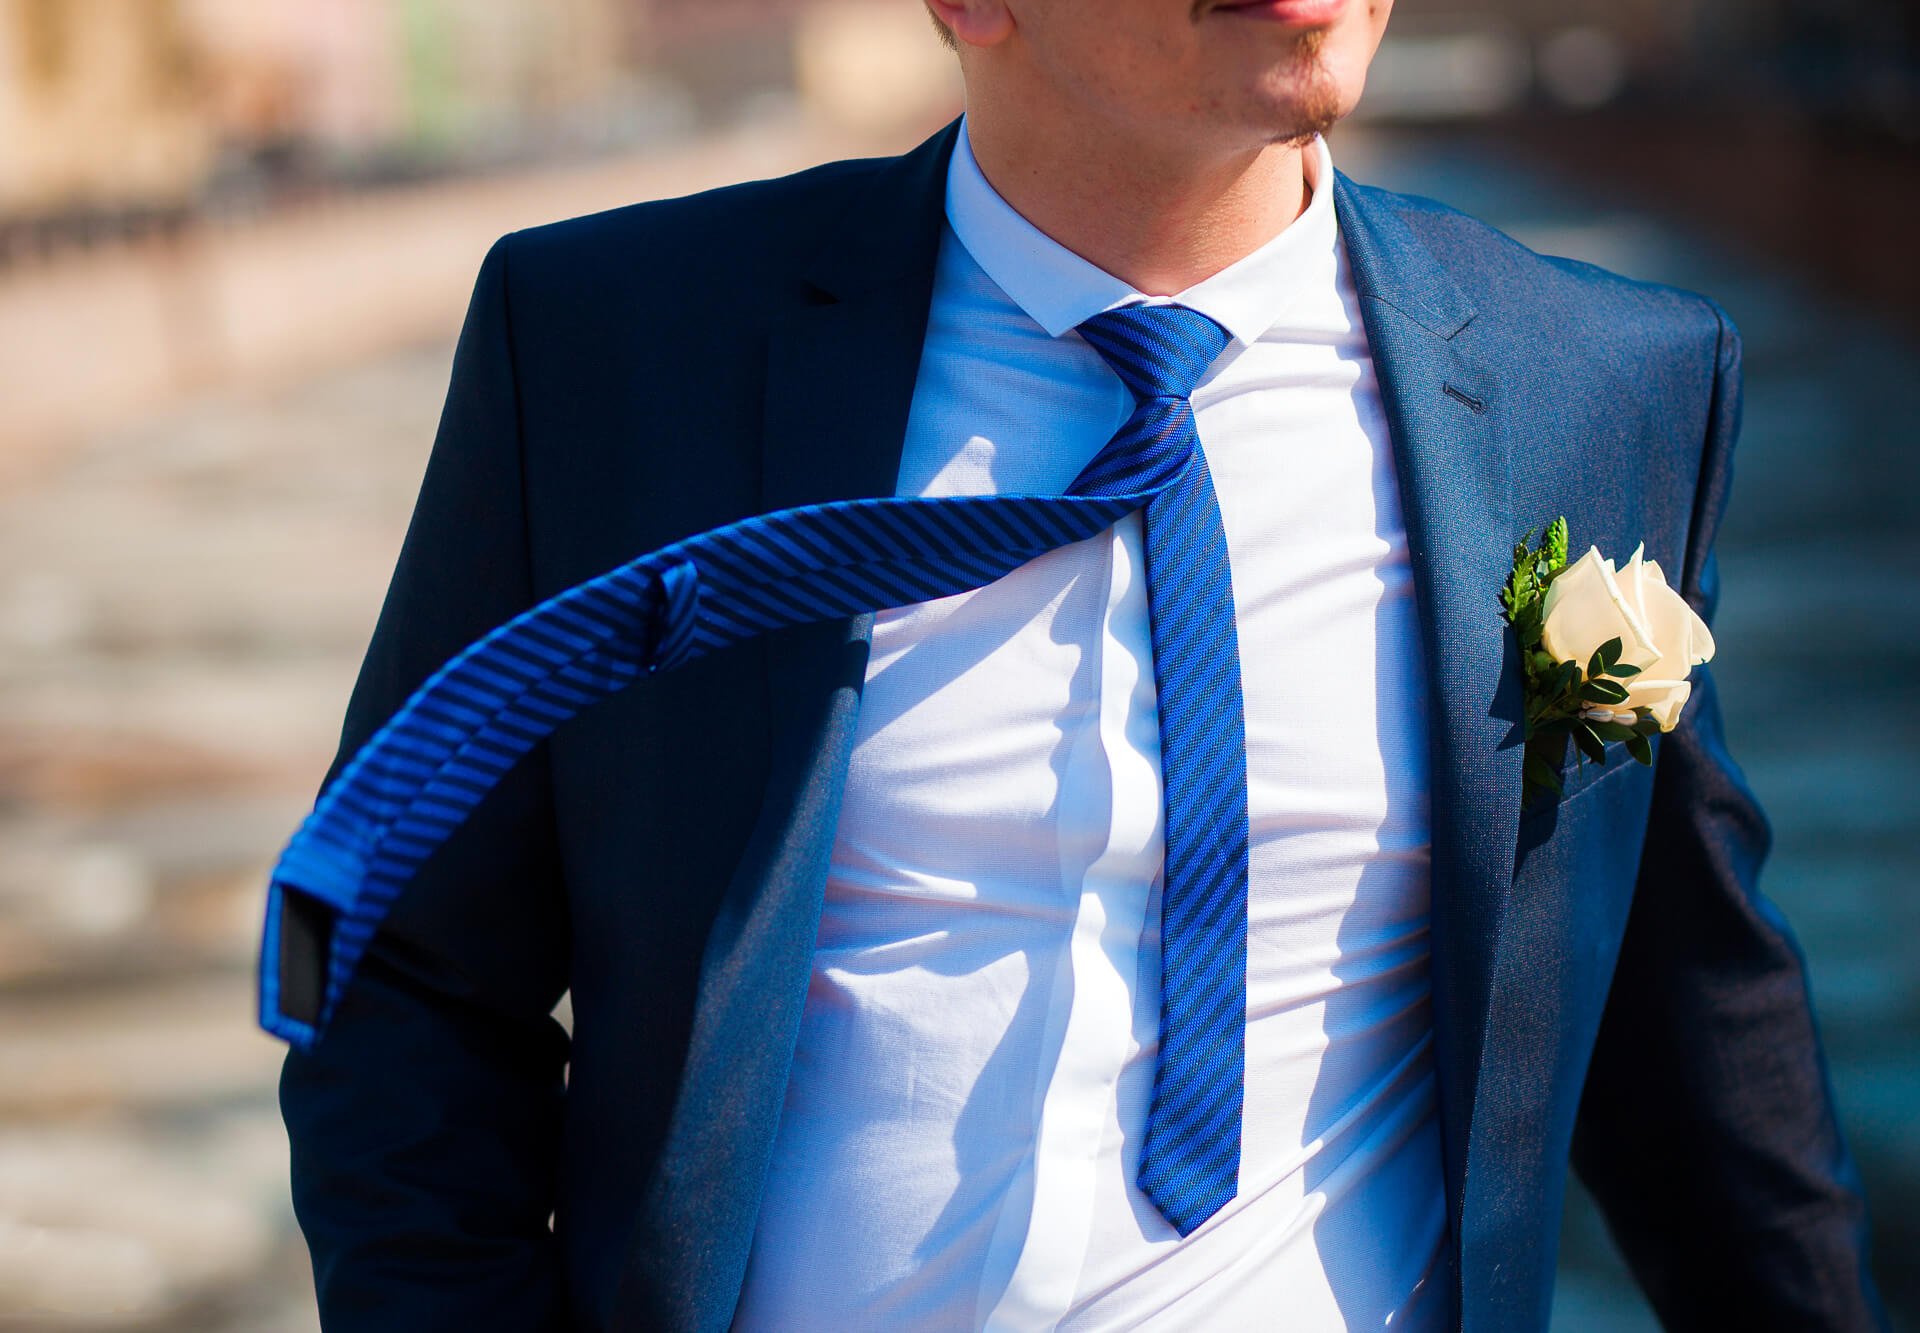 Какой галстук подойдет под синий костюм